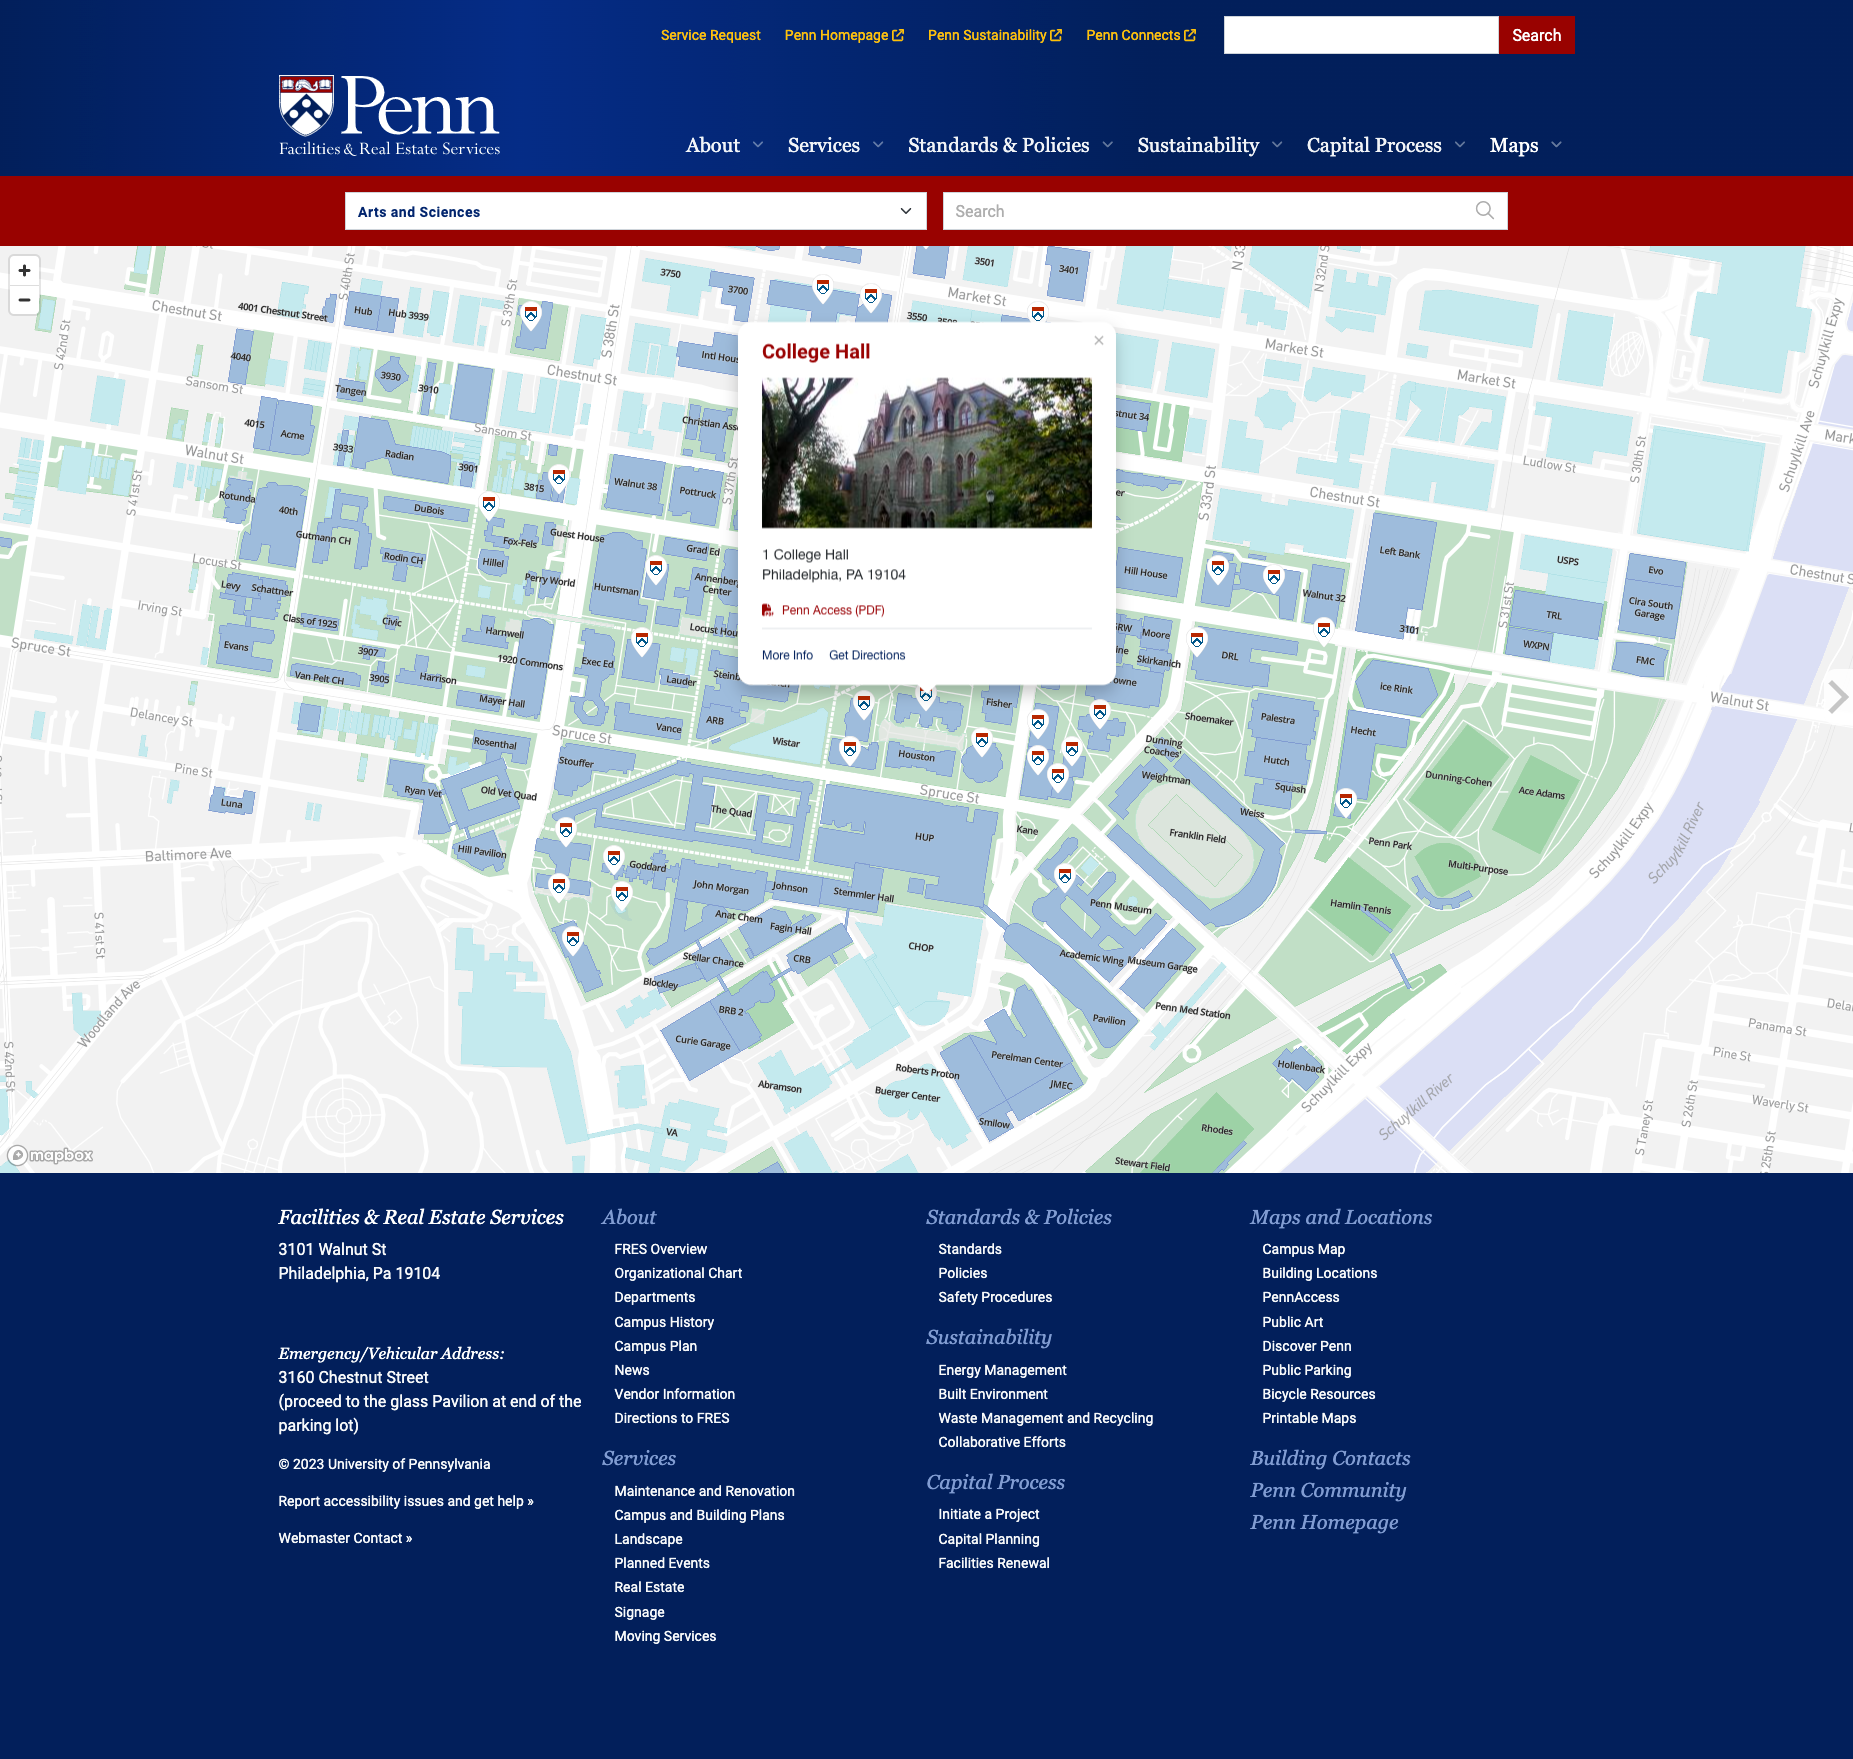 Penn Campus Map